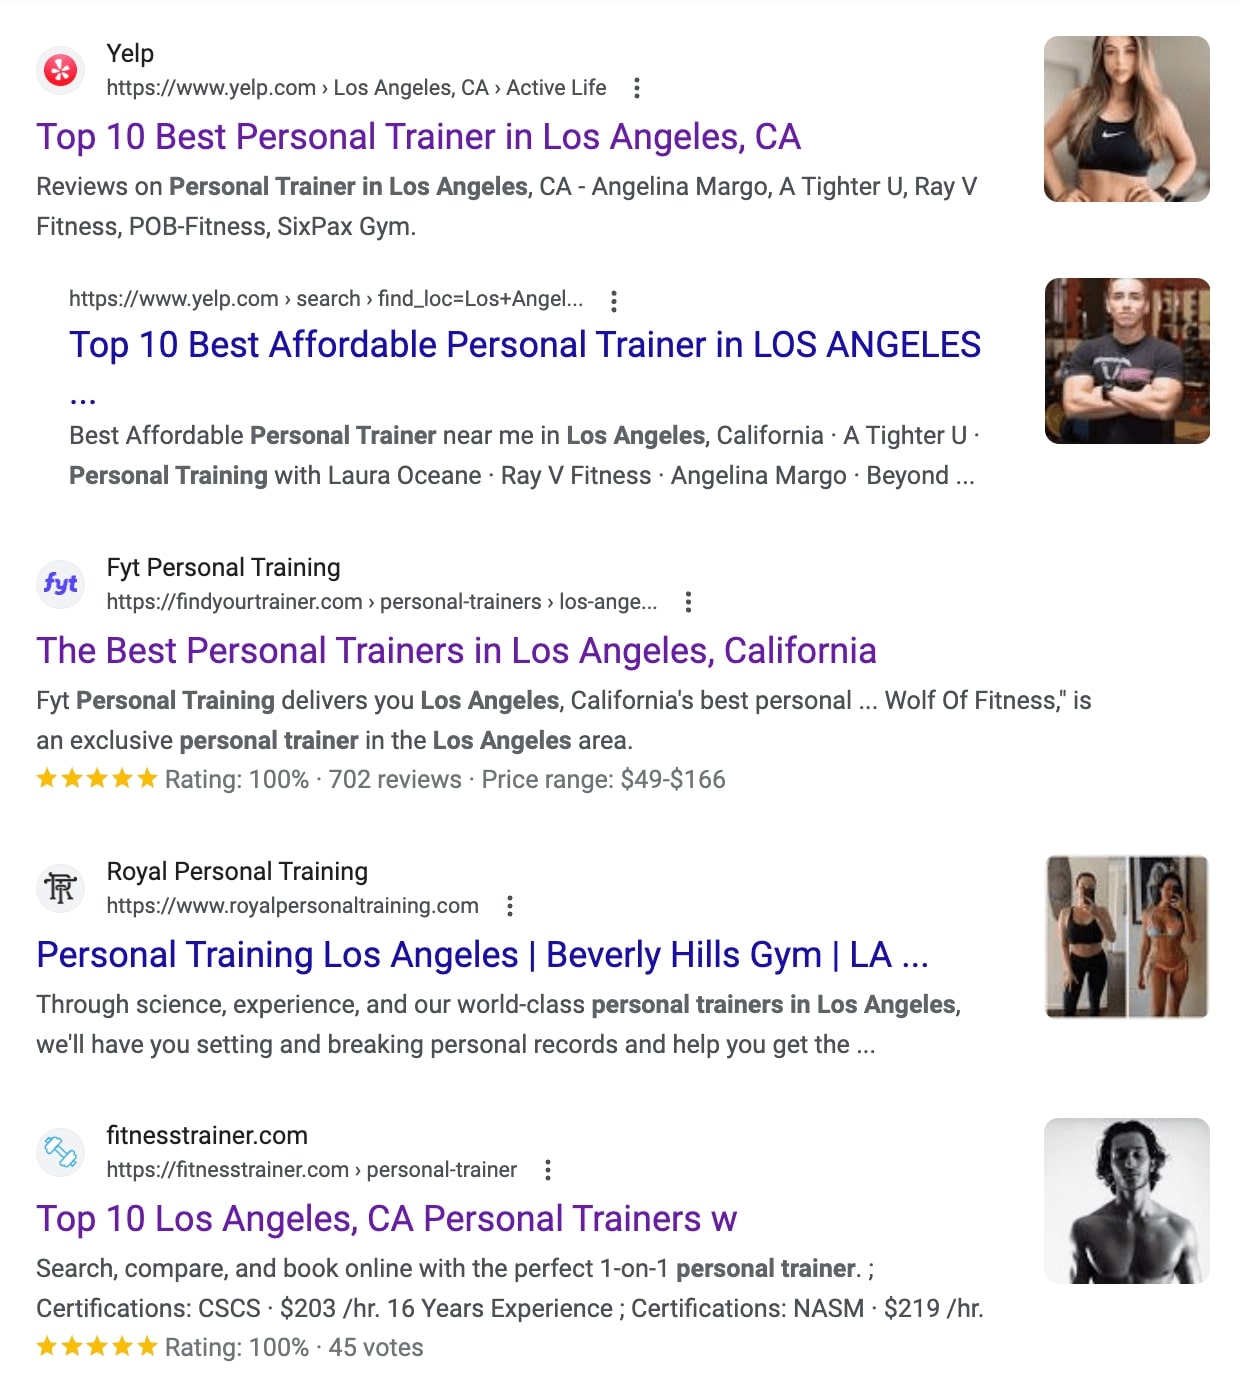 ¿Qué es el tráfico de referencia? Principales resultados de búsqueda de Google para "entrenador personal en los Ángeles"